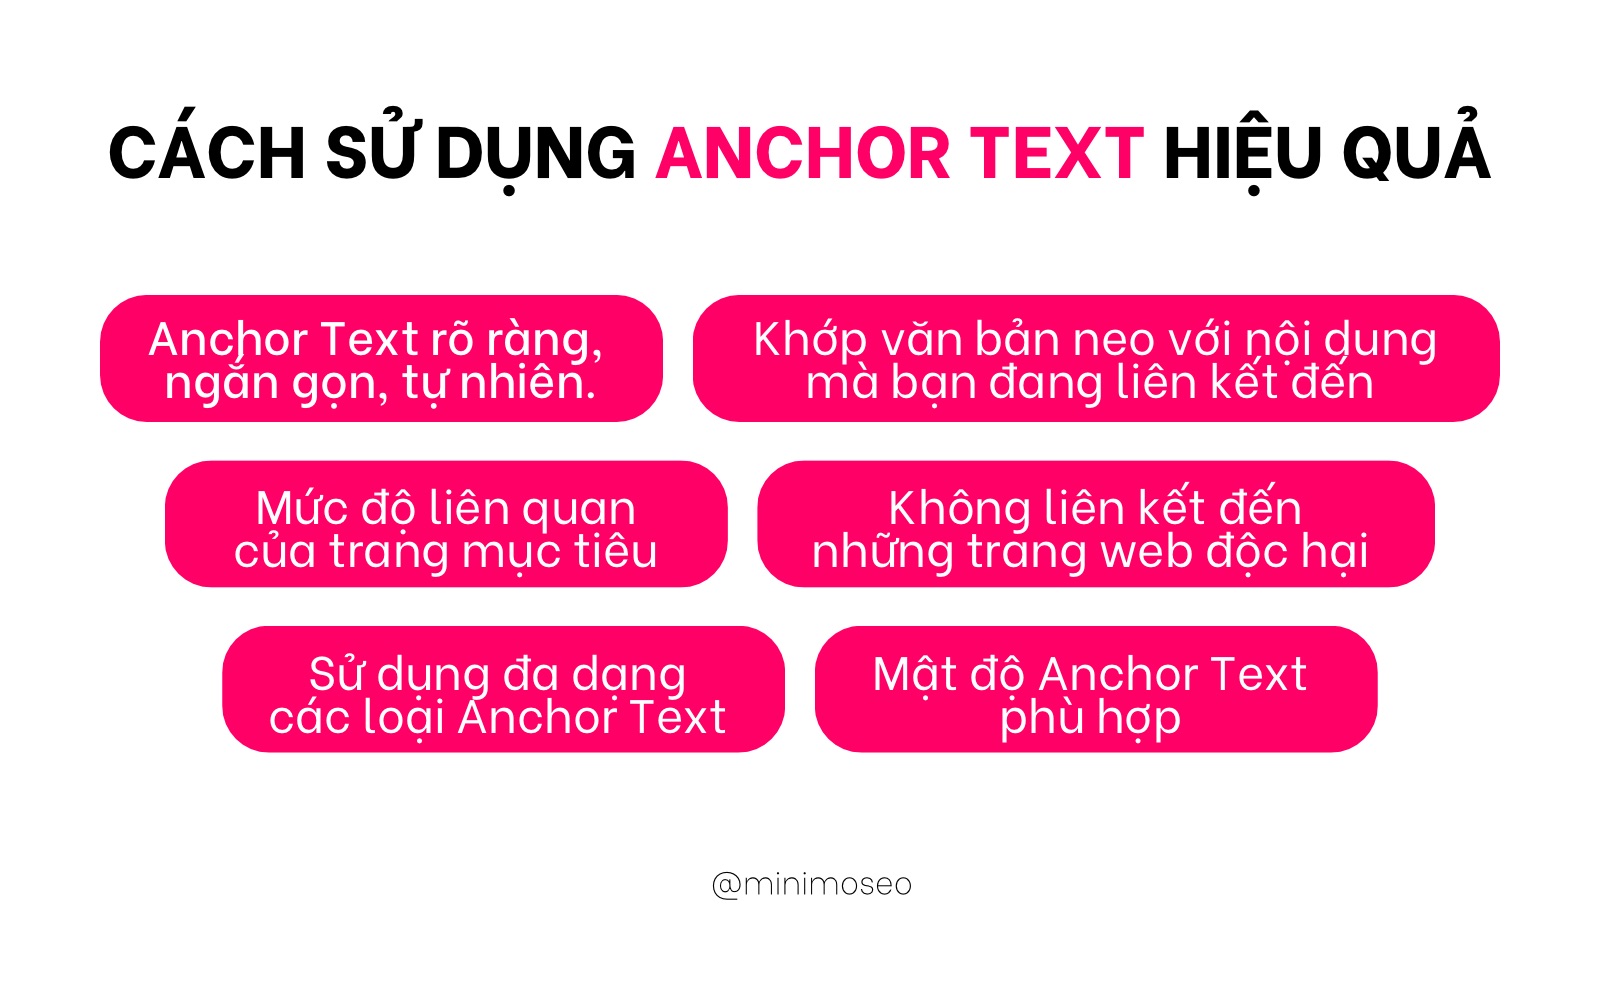 Anchor text và cách sử dụng